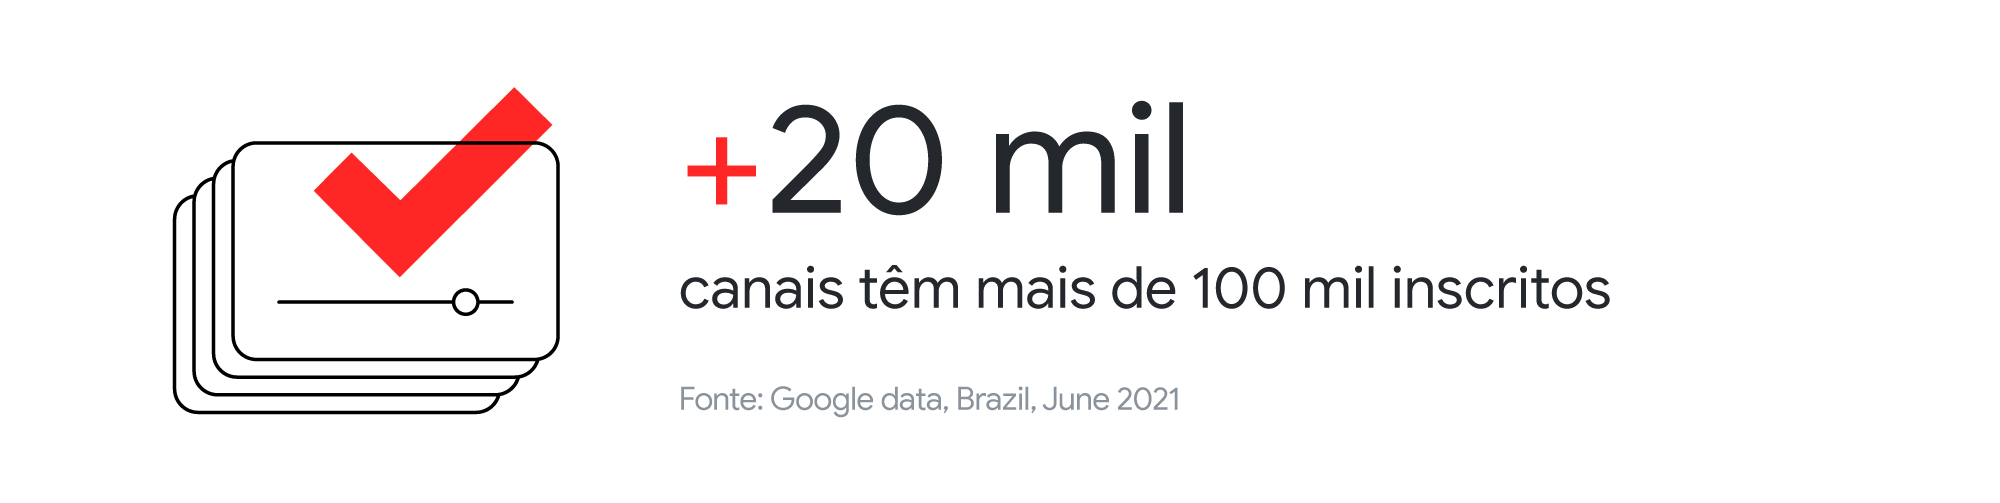 Pesquisa inédita mostra o impacto econômico, cultural e social do YouTube no Brasil- Inline 03 Desktop